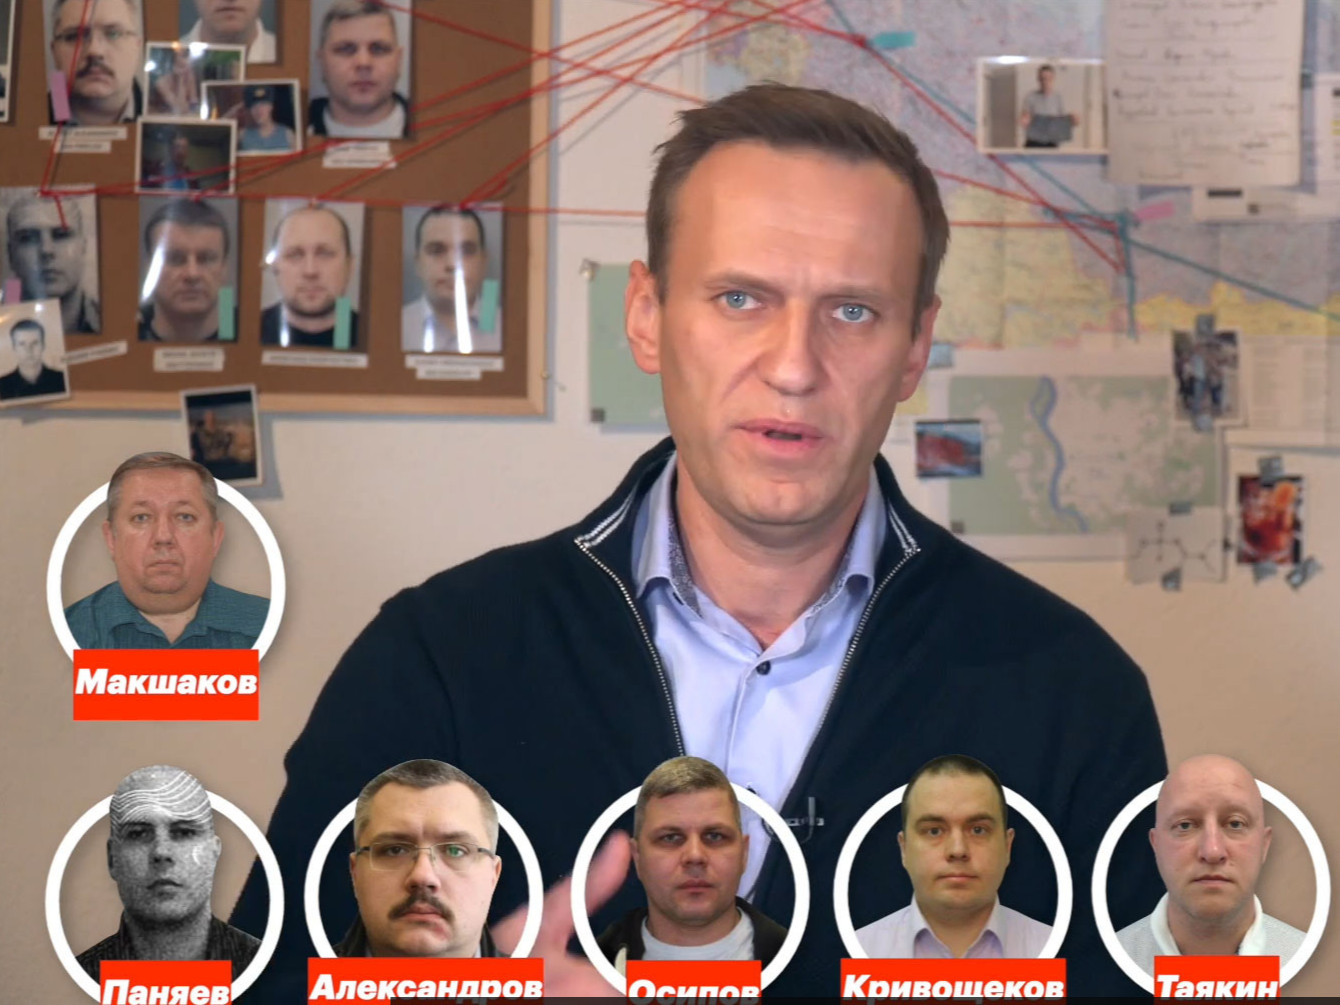 ВИДЕО: А.Навальный өөрийг нь хордуулах үйл ажиллагаанд оролцсон хүмүүсийг илчлэв